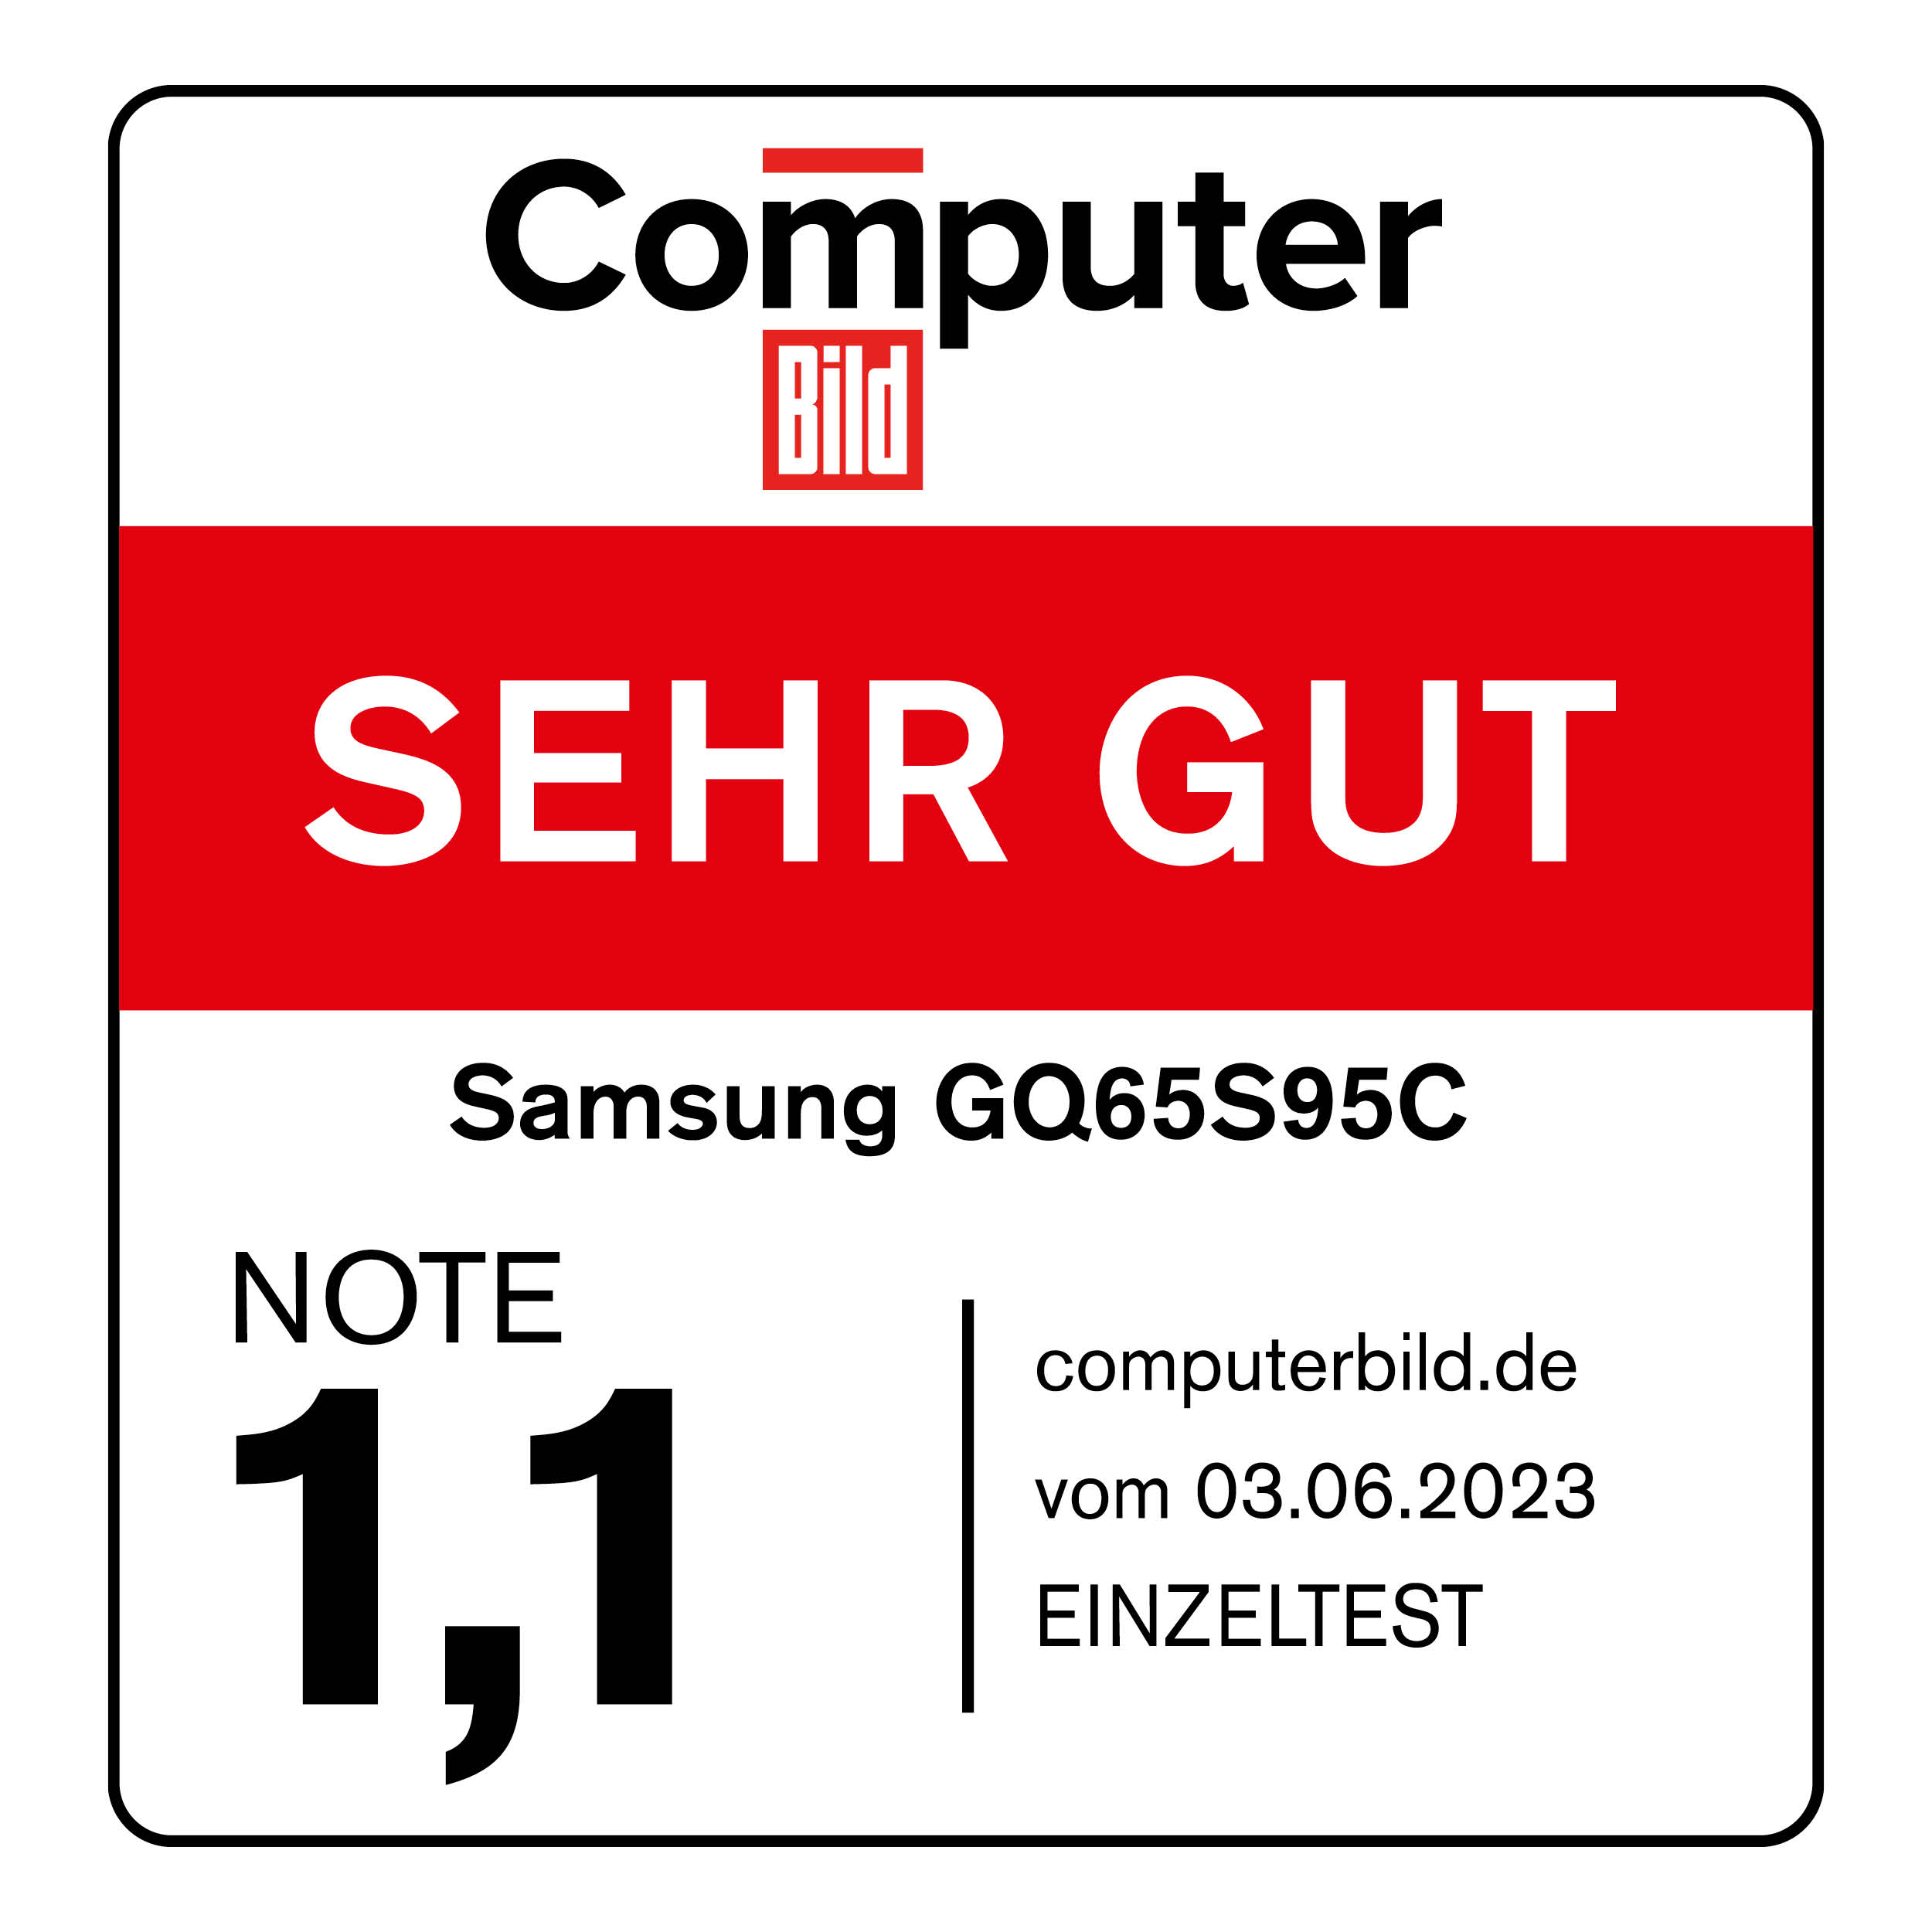 120854_Computer_Bild_sehr_gut_Samsung_GQ65S95C_06_2023_mitAngaben